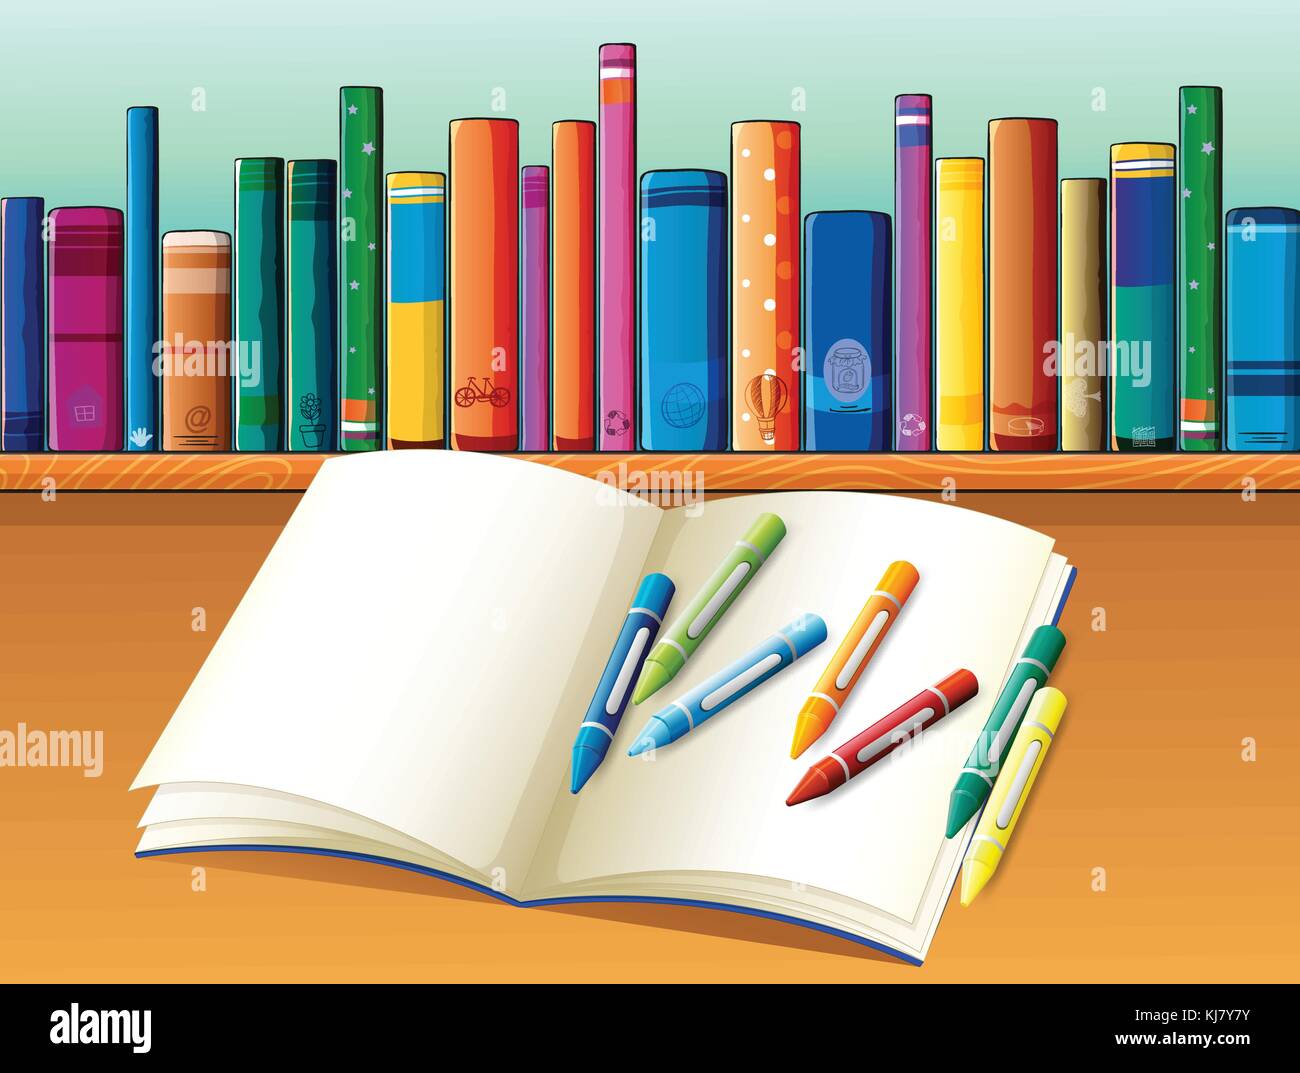 Illustrazione di un vuoto di notebook con matite colorate nella parte anteriore dello scaffale con libri Illustrazione Vettoriale